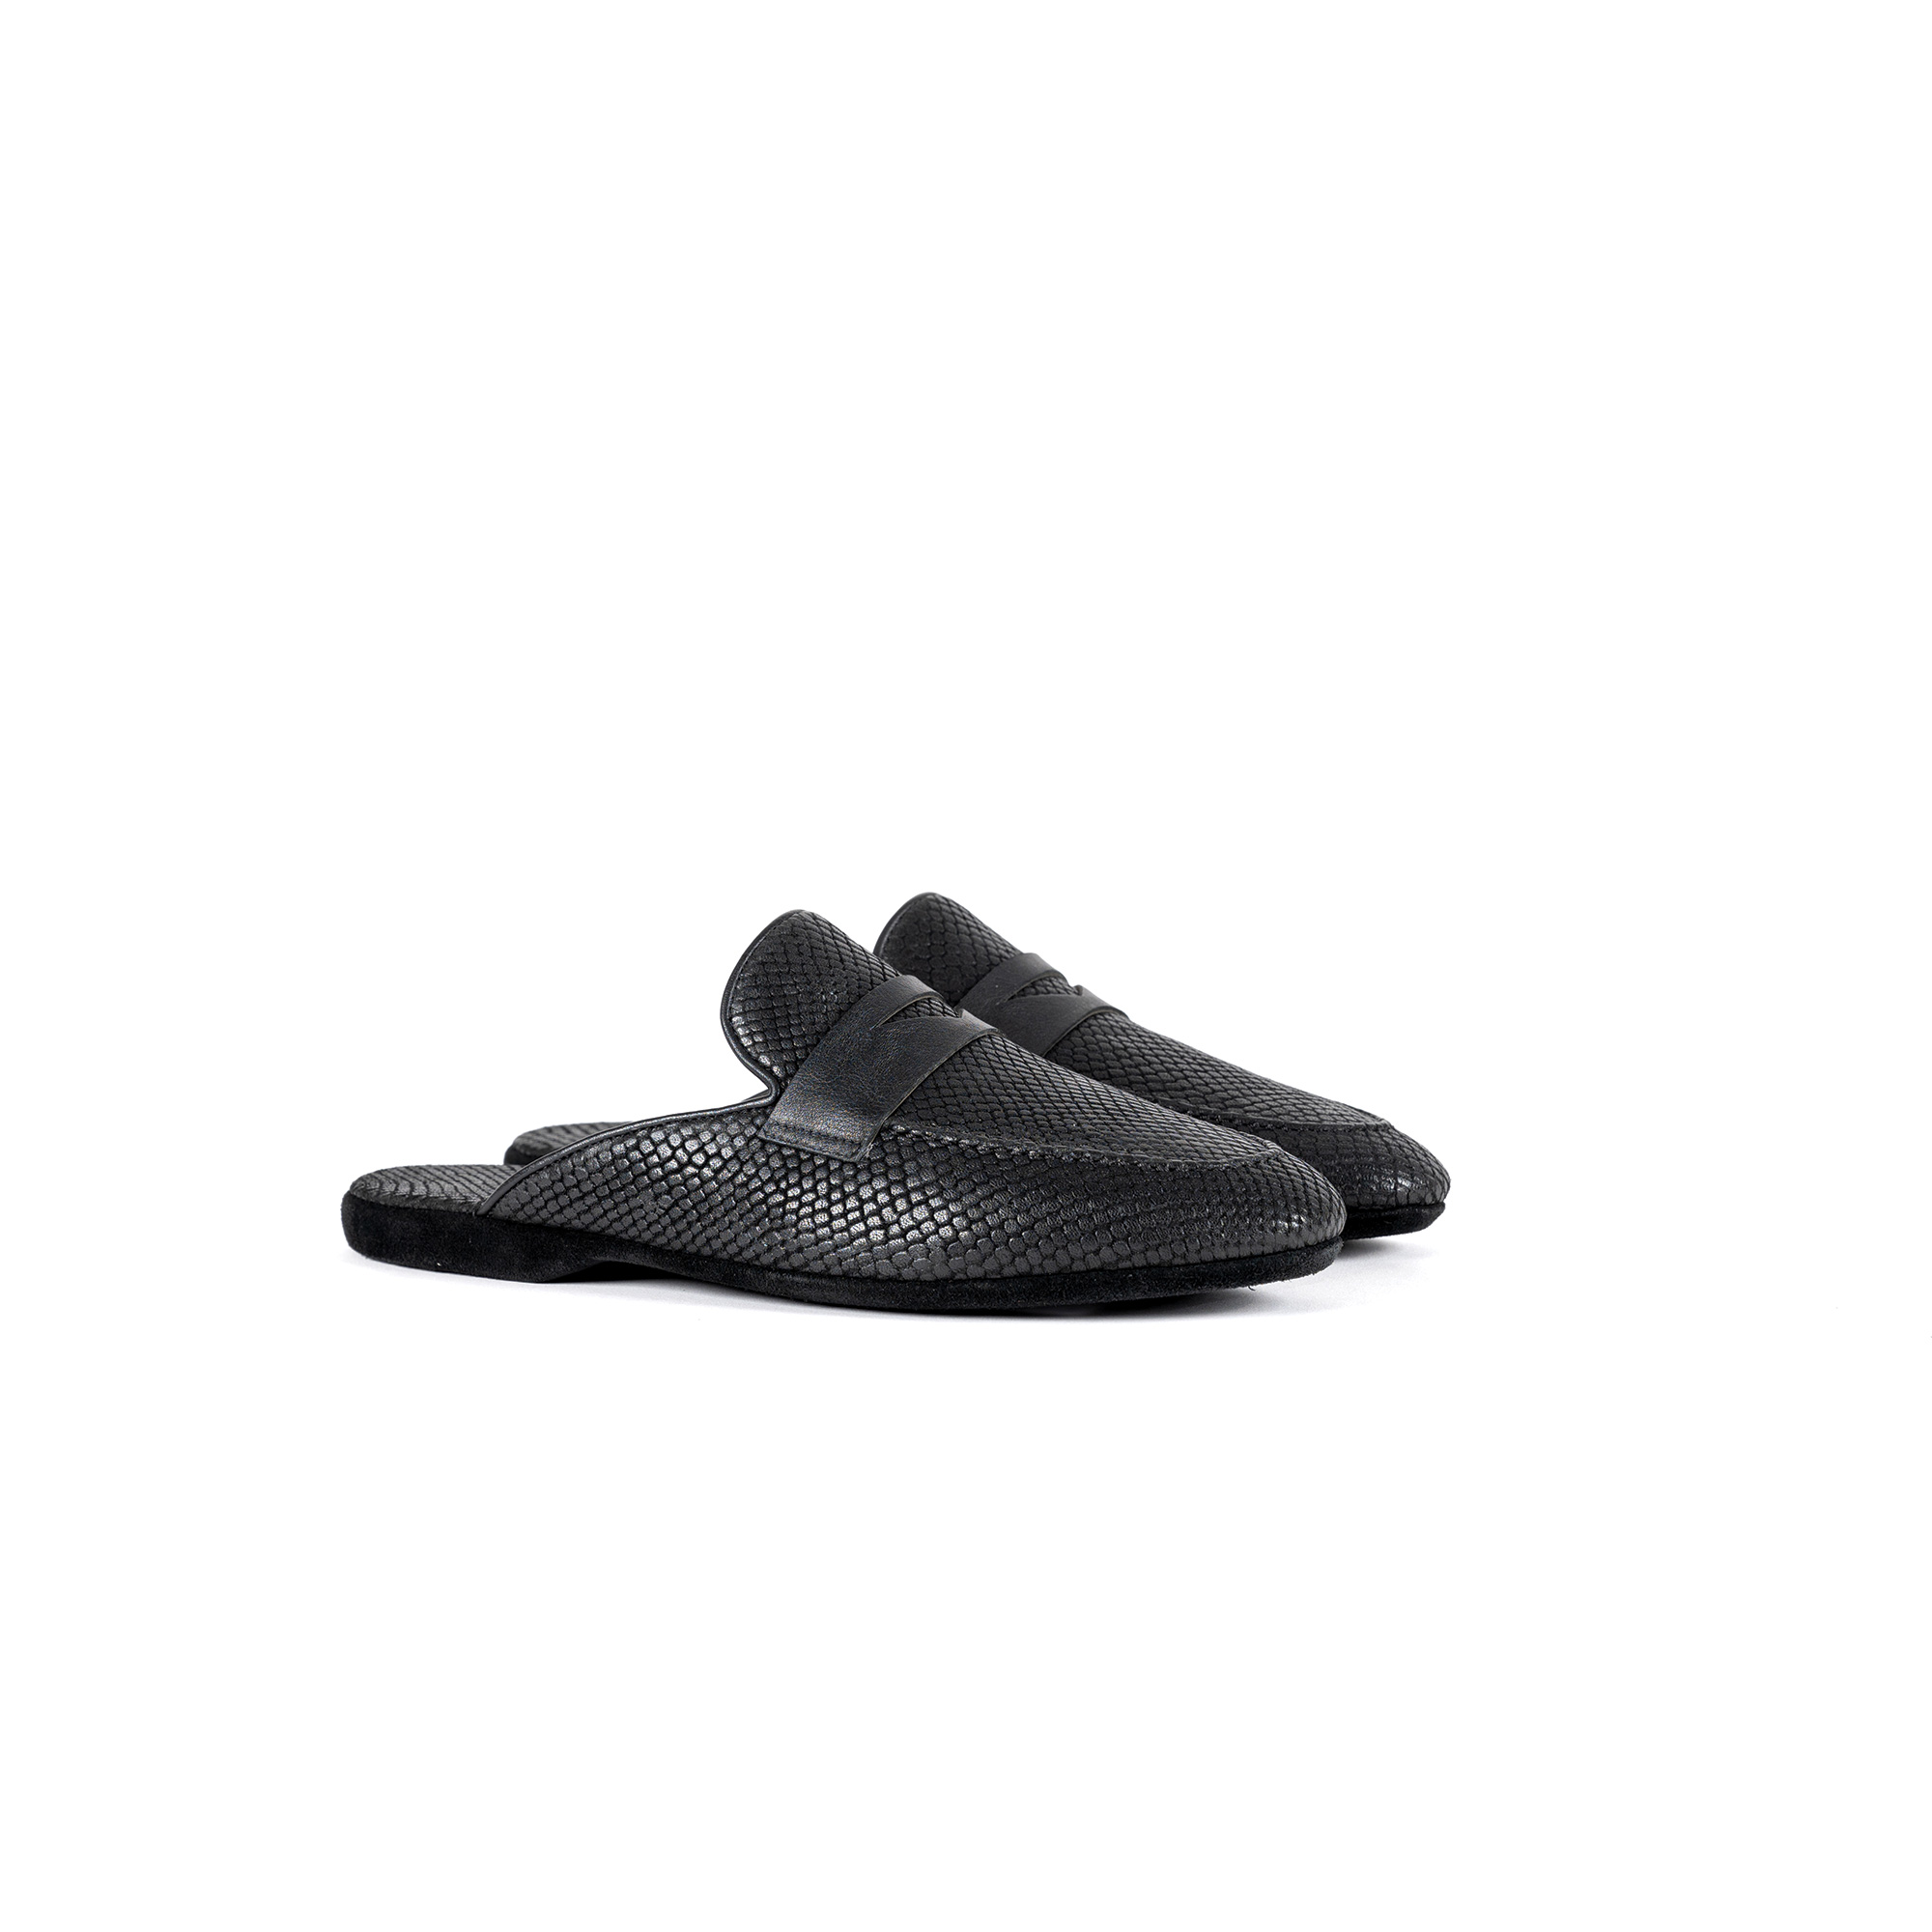 Pantofola interno lusso in pelle stampato exotic nero - Farfalla italian slippers